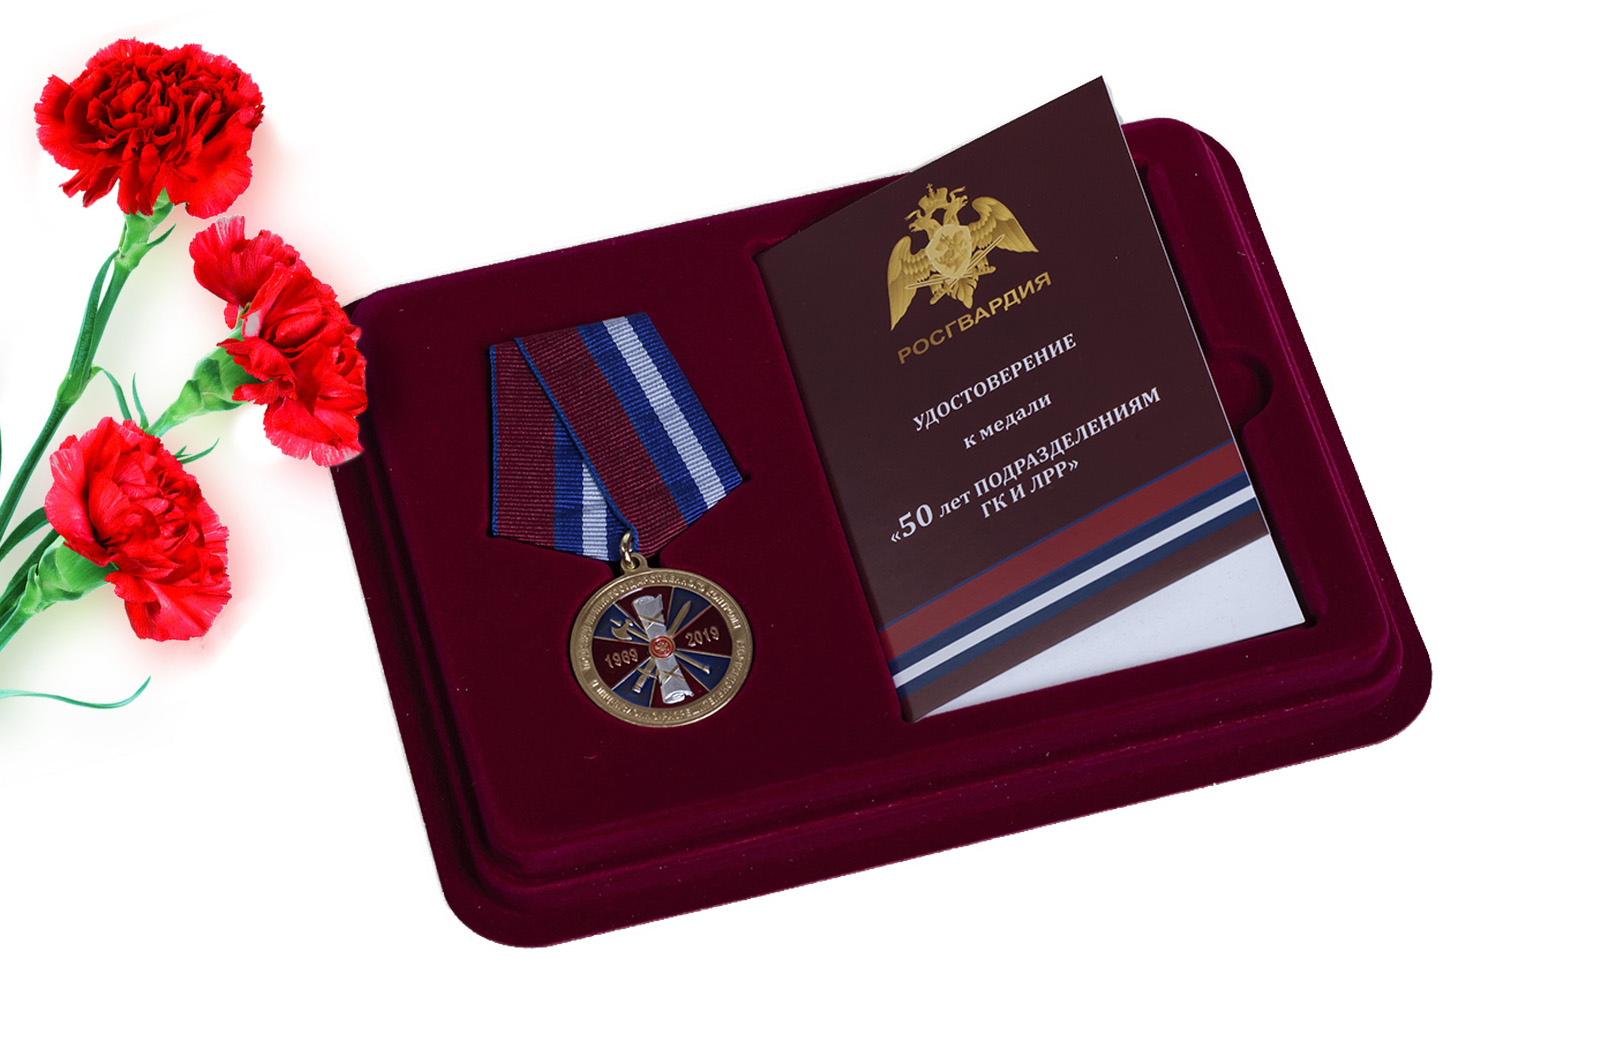 Купить медаль Росгвардии 50 лет подразделениям ГК и ЛРР оптом или в розницу